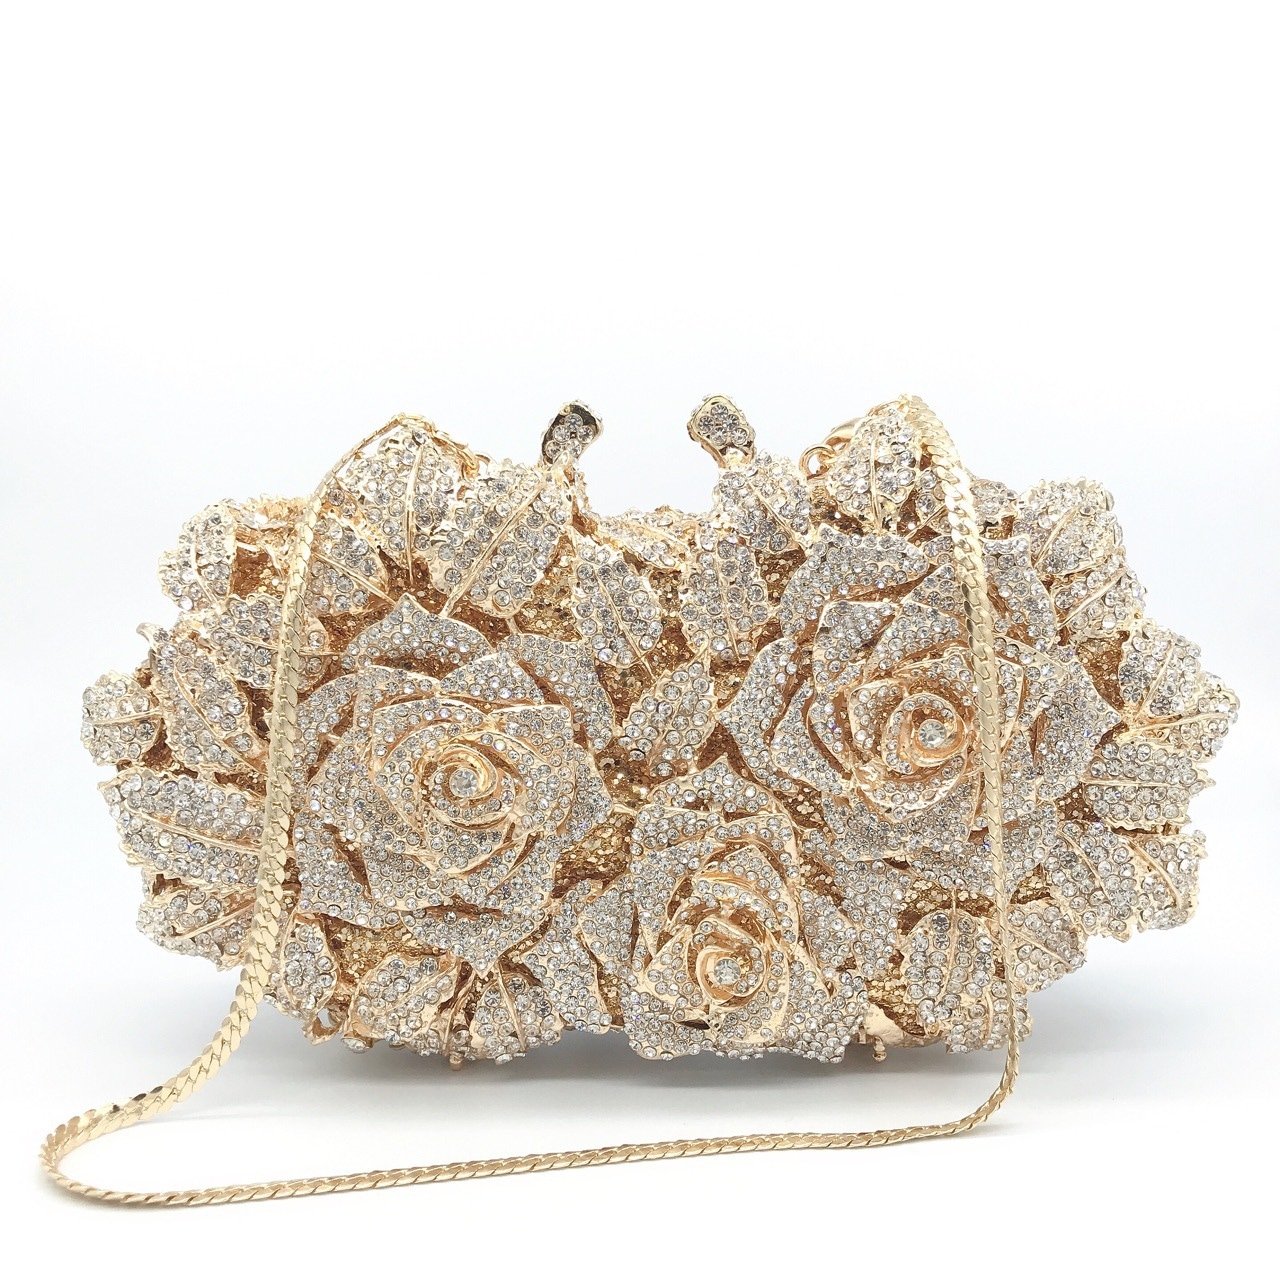 バラの花ダイヤモンドのディナーバッグ金属のハードケースの女性バッグはイブニングドレスの宴会にダイヤモンドのバッグを入れることができます